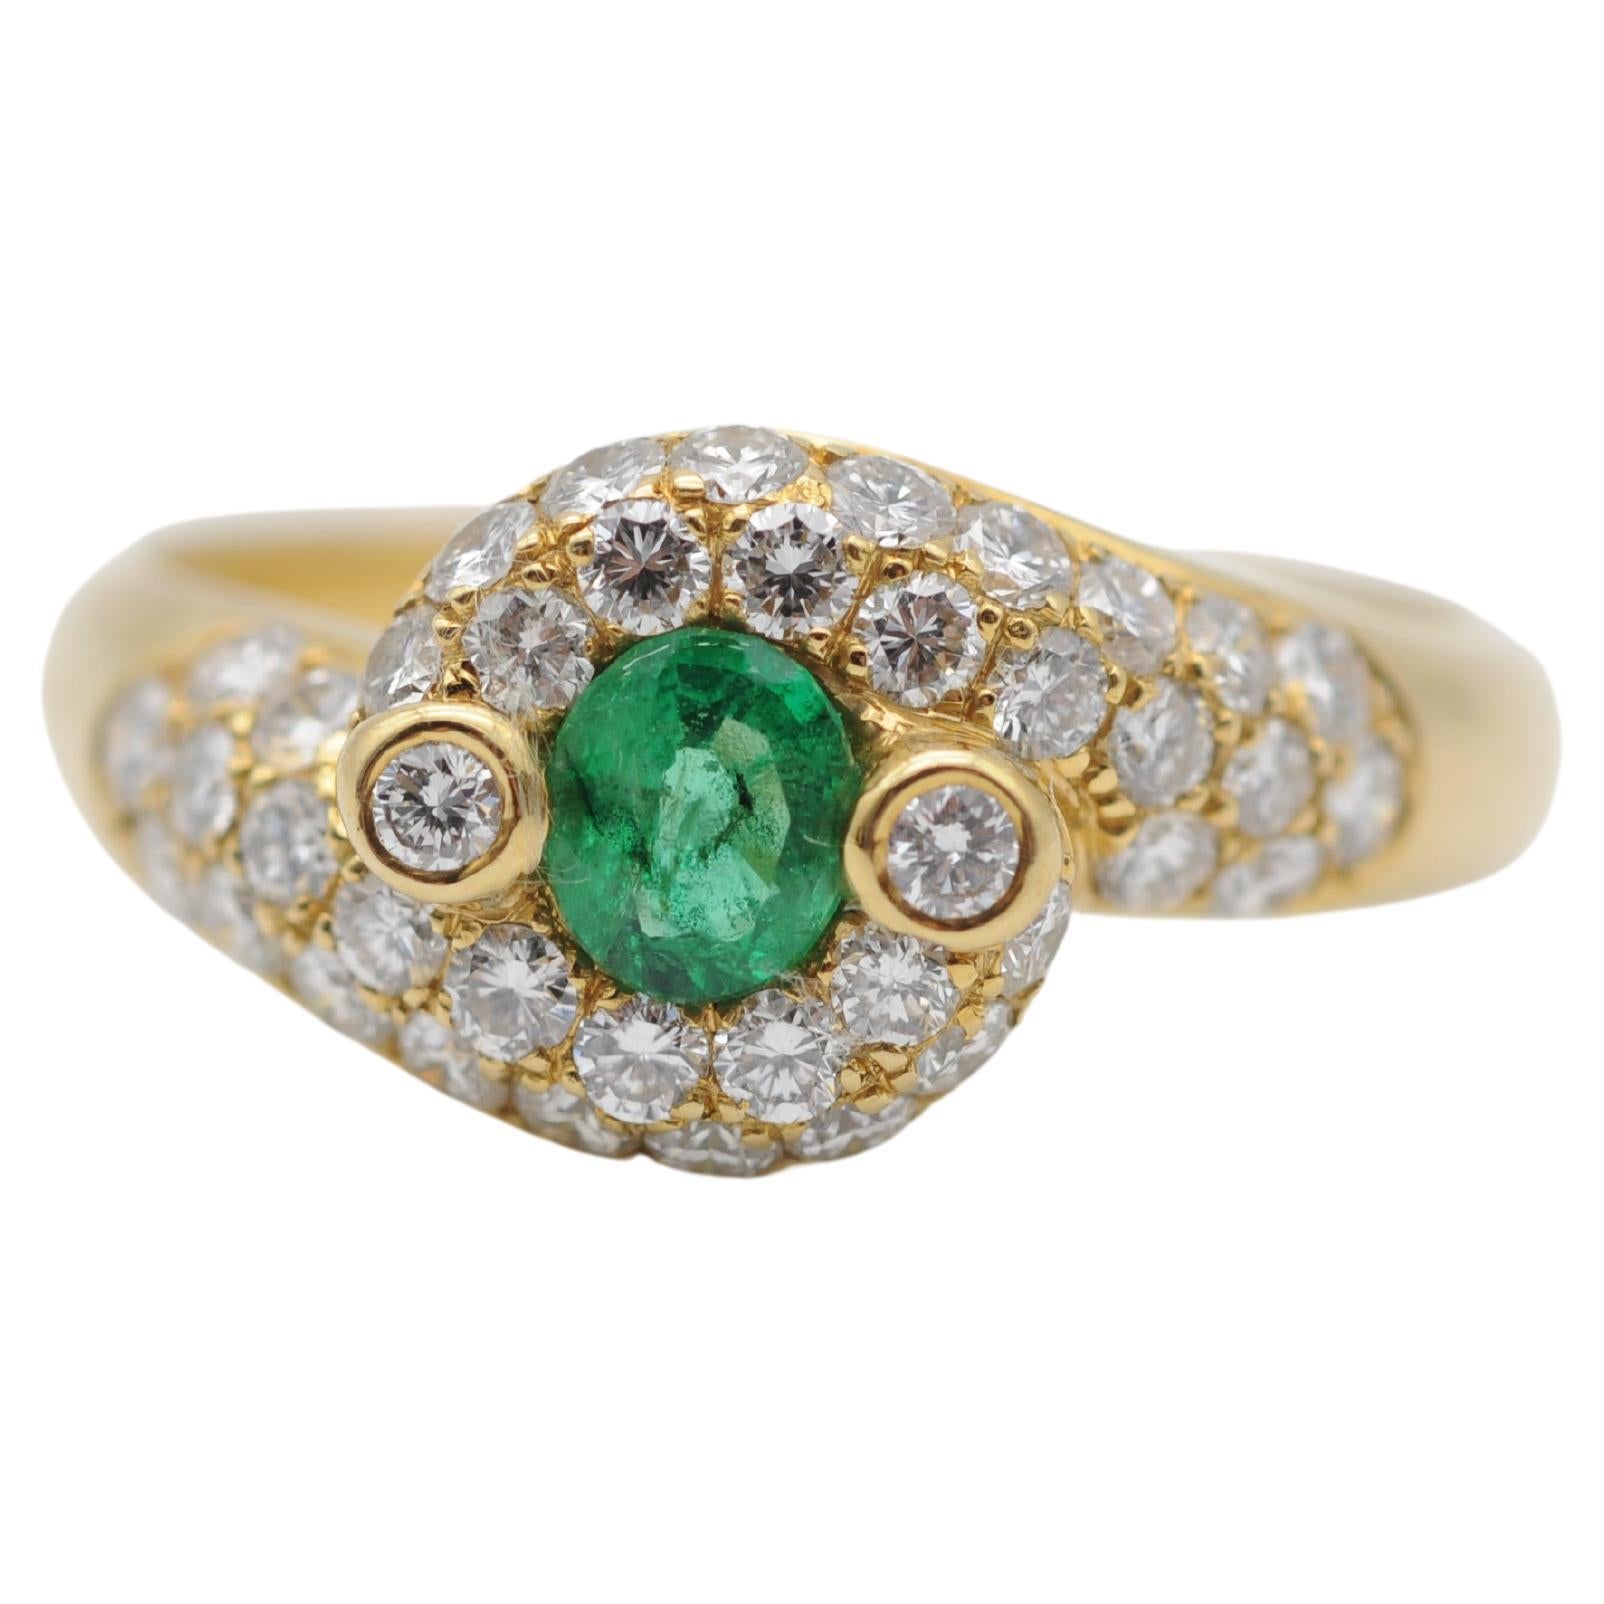 Majestic emerald diamond ring 18k yellow gold 